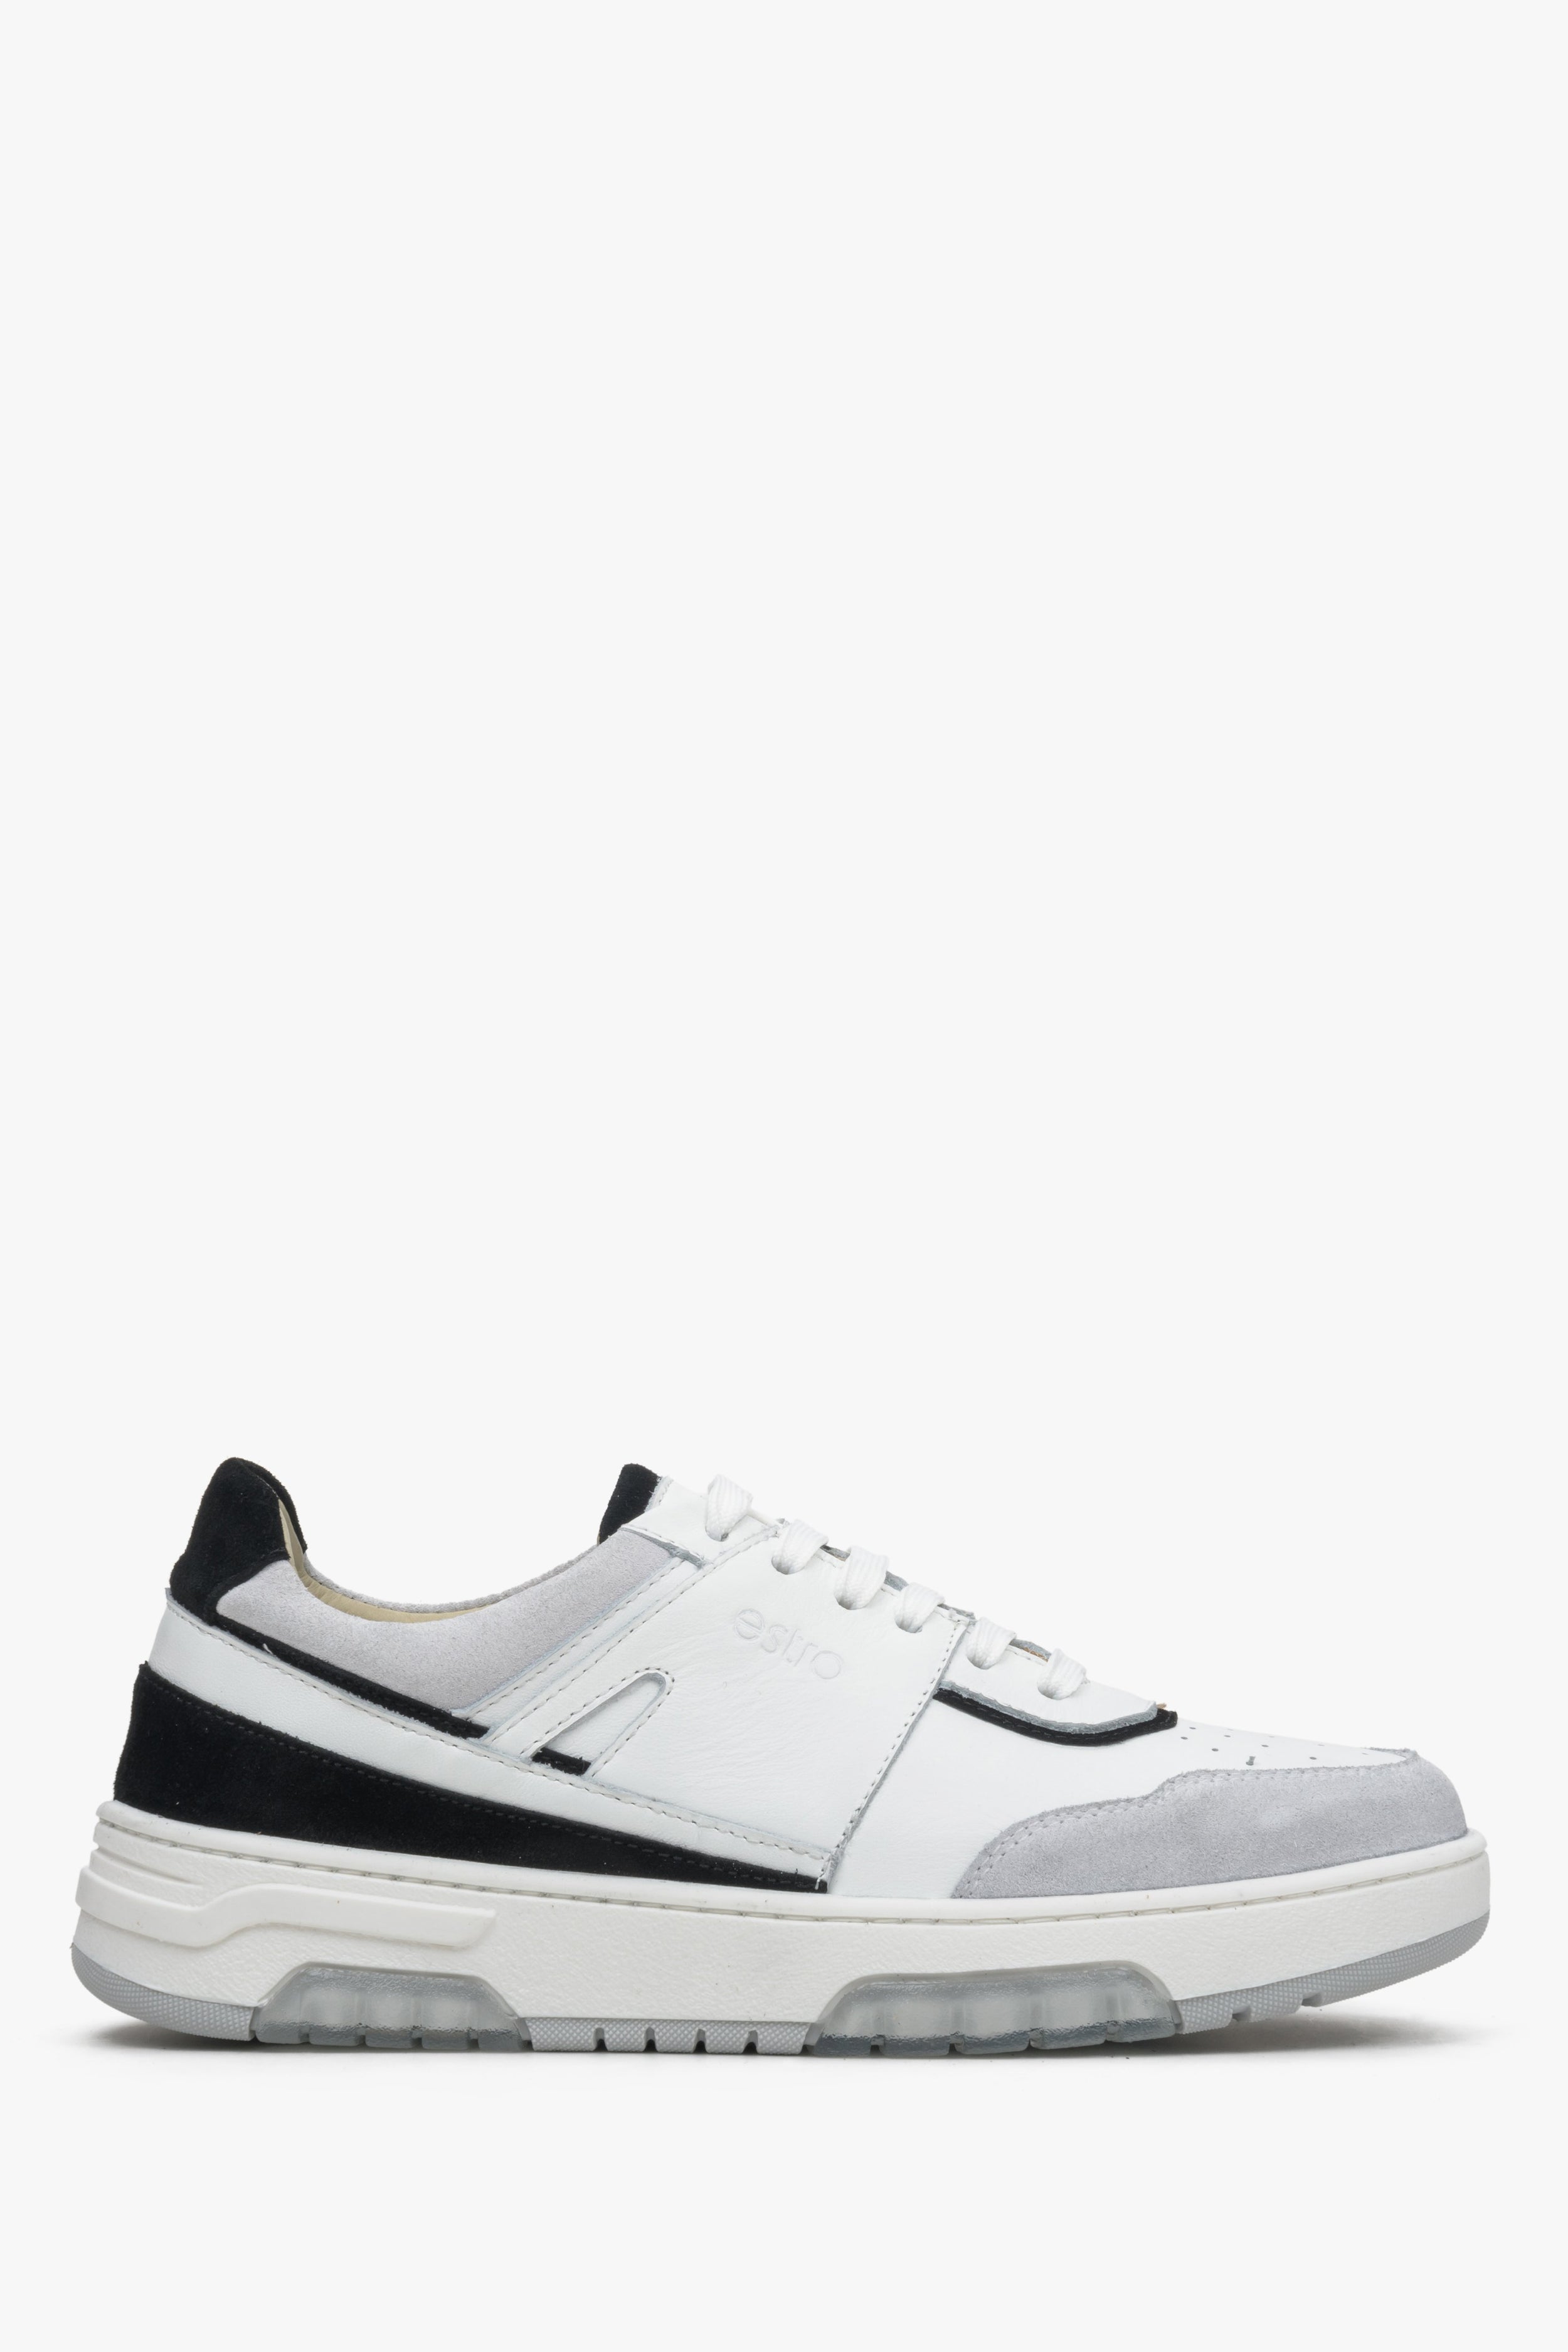 Estro: Szaro-białe sneakersy damskie z łączonych materiałów